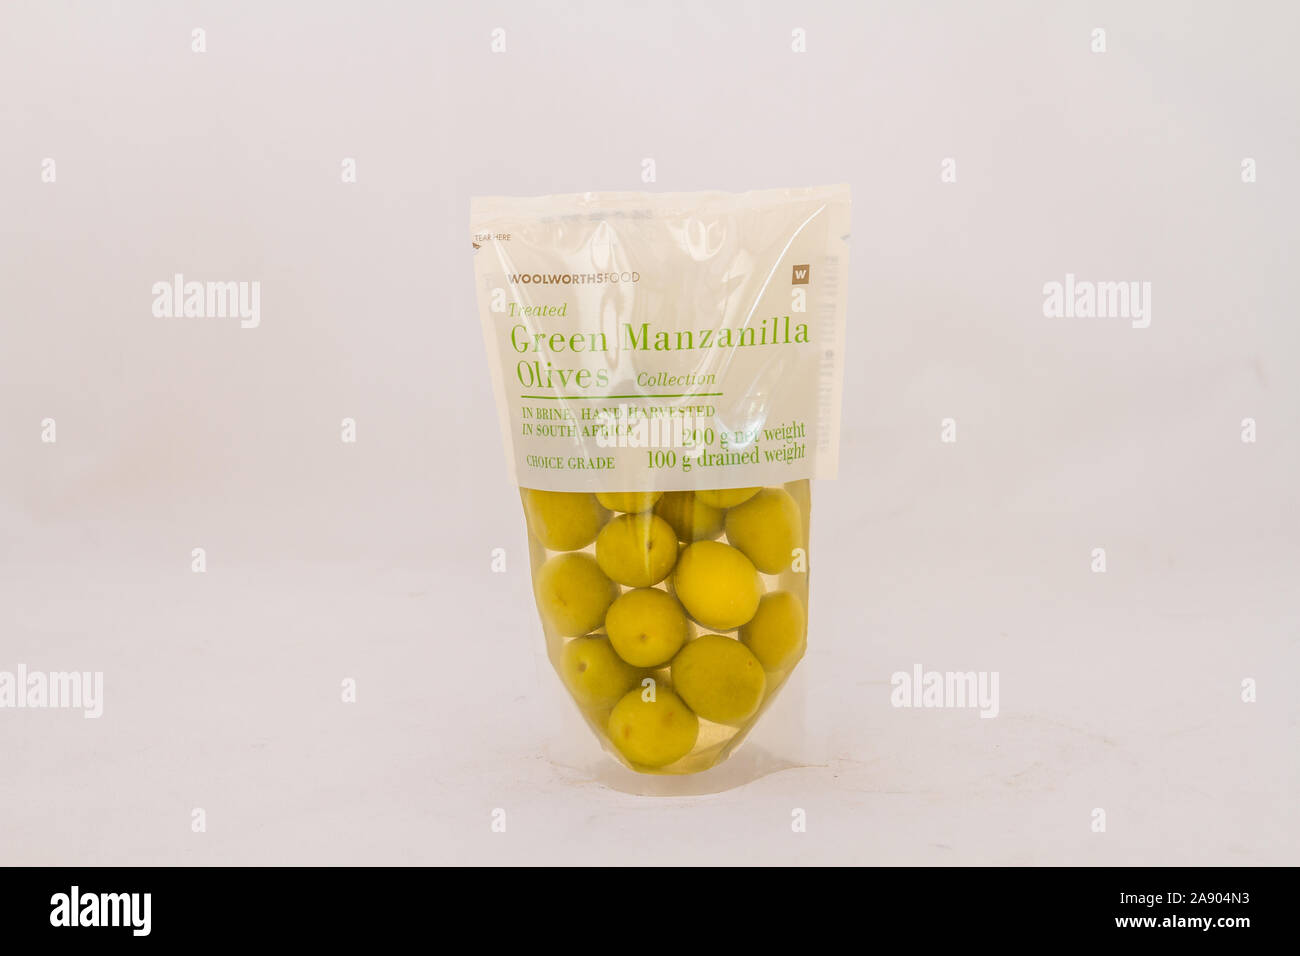 Alberton, Afrique du Sud - un sac de Woolworths Food green olives manzanilla isolé sur un fond clair avec image copy space Banque D'Images